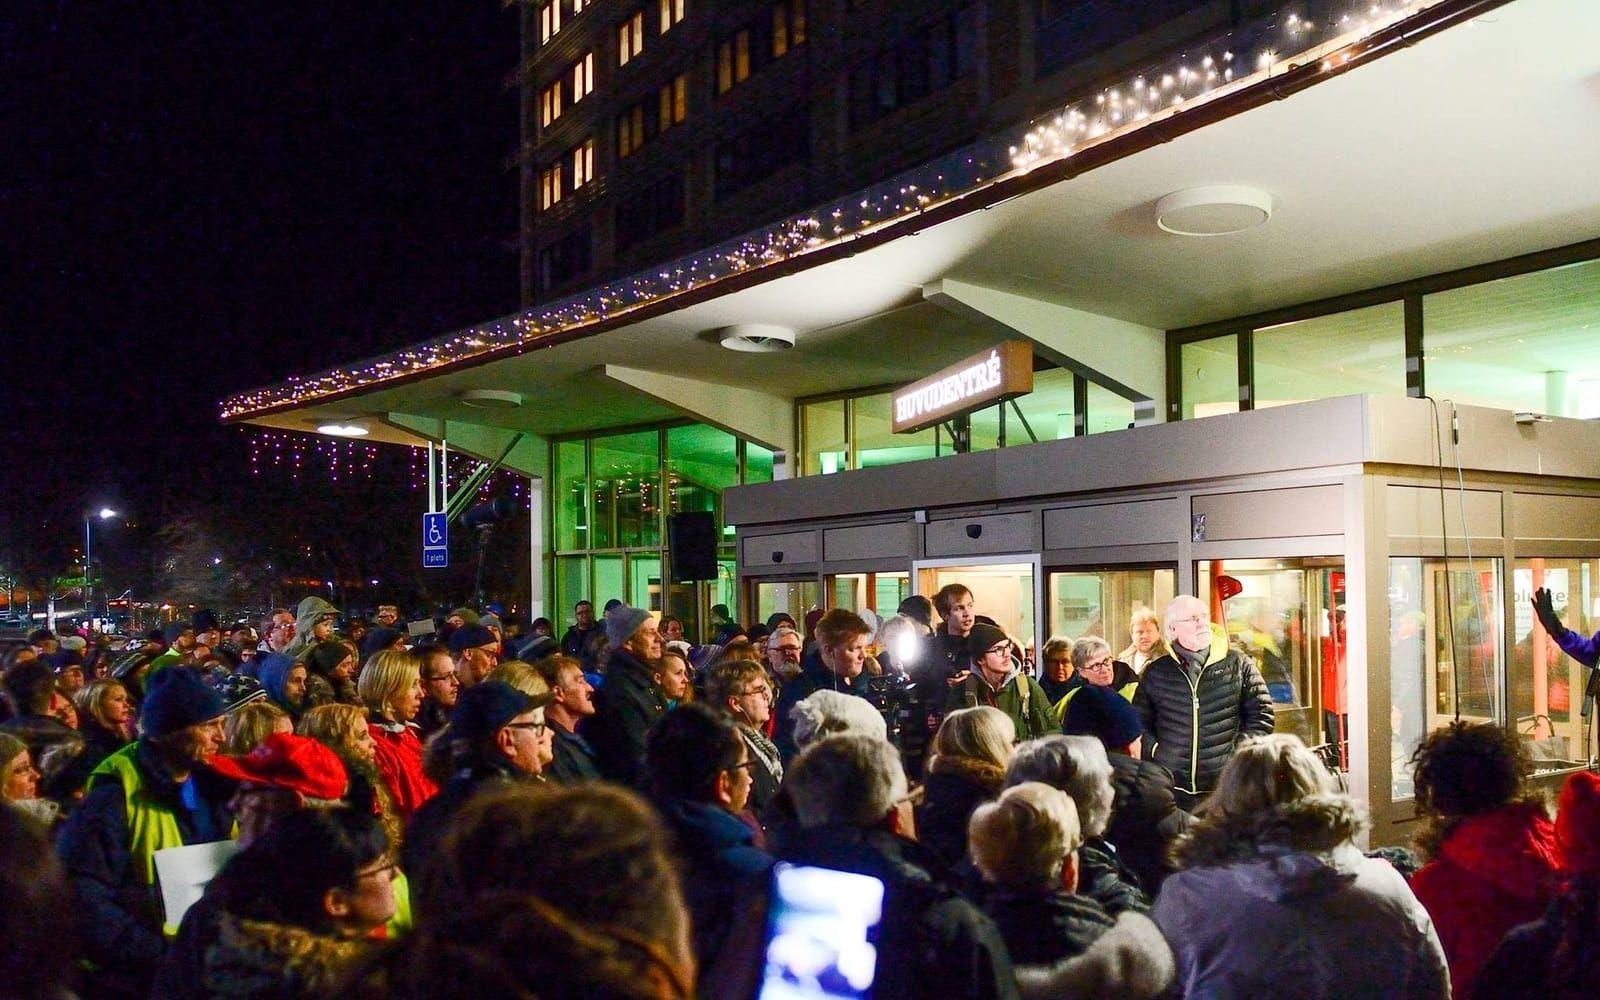 Stängningen av BB i Sollefteå har mötts av massiv kritik och sjukhuset har ockuperats i protester mot beslutet. Föräldrar som väntar barn kan nu få göra en resa på upp till 20 mil för att komma till närmaste BB.